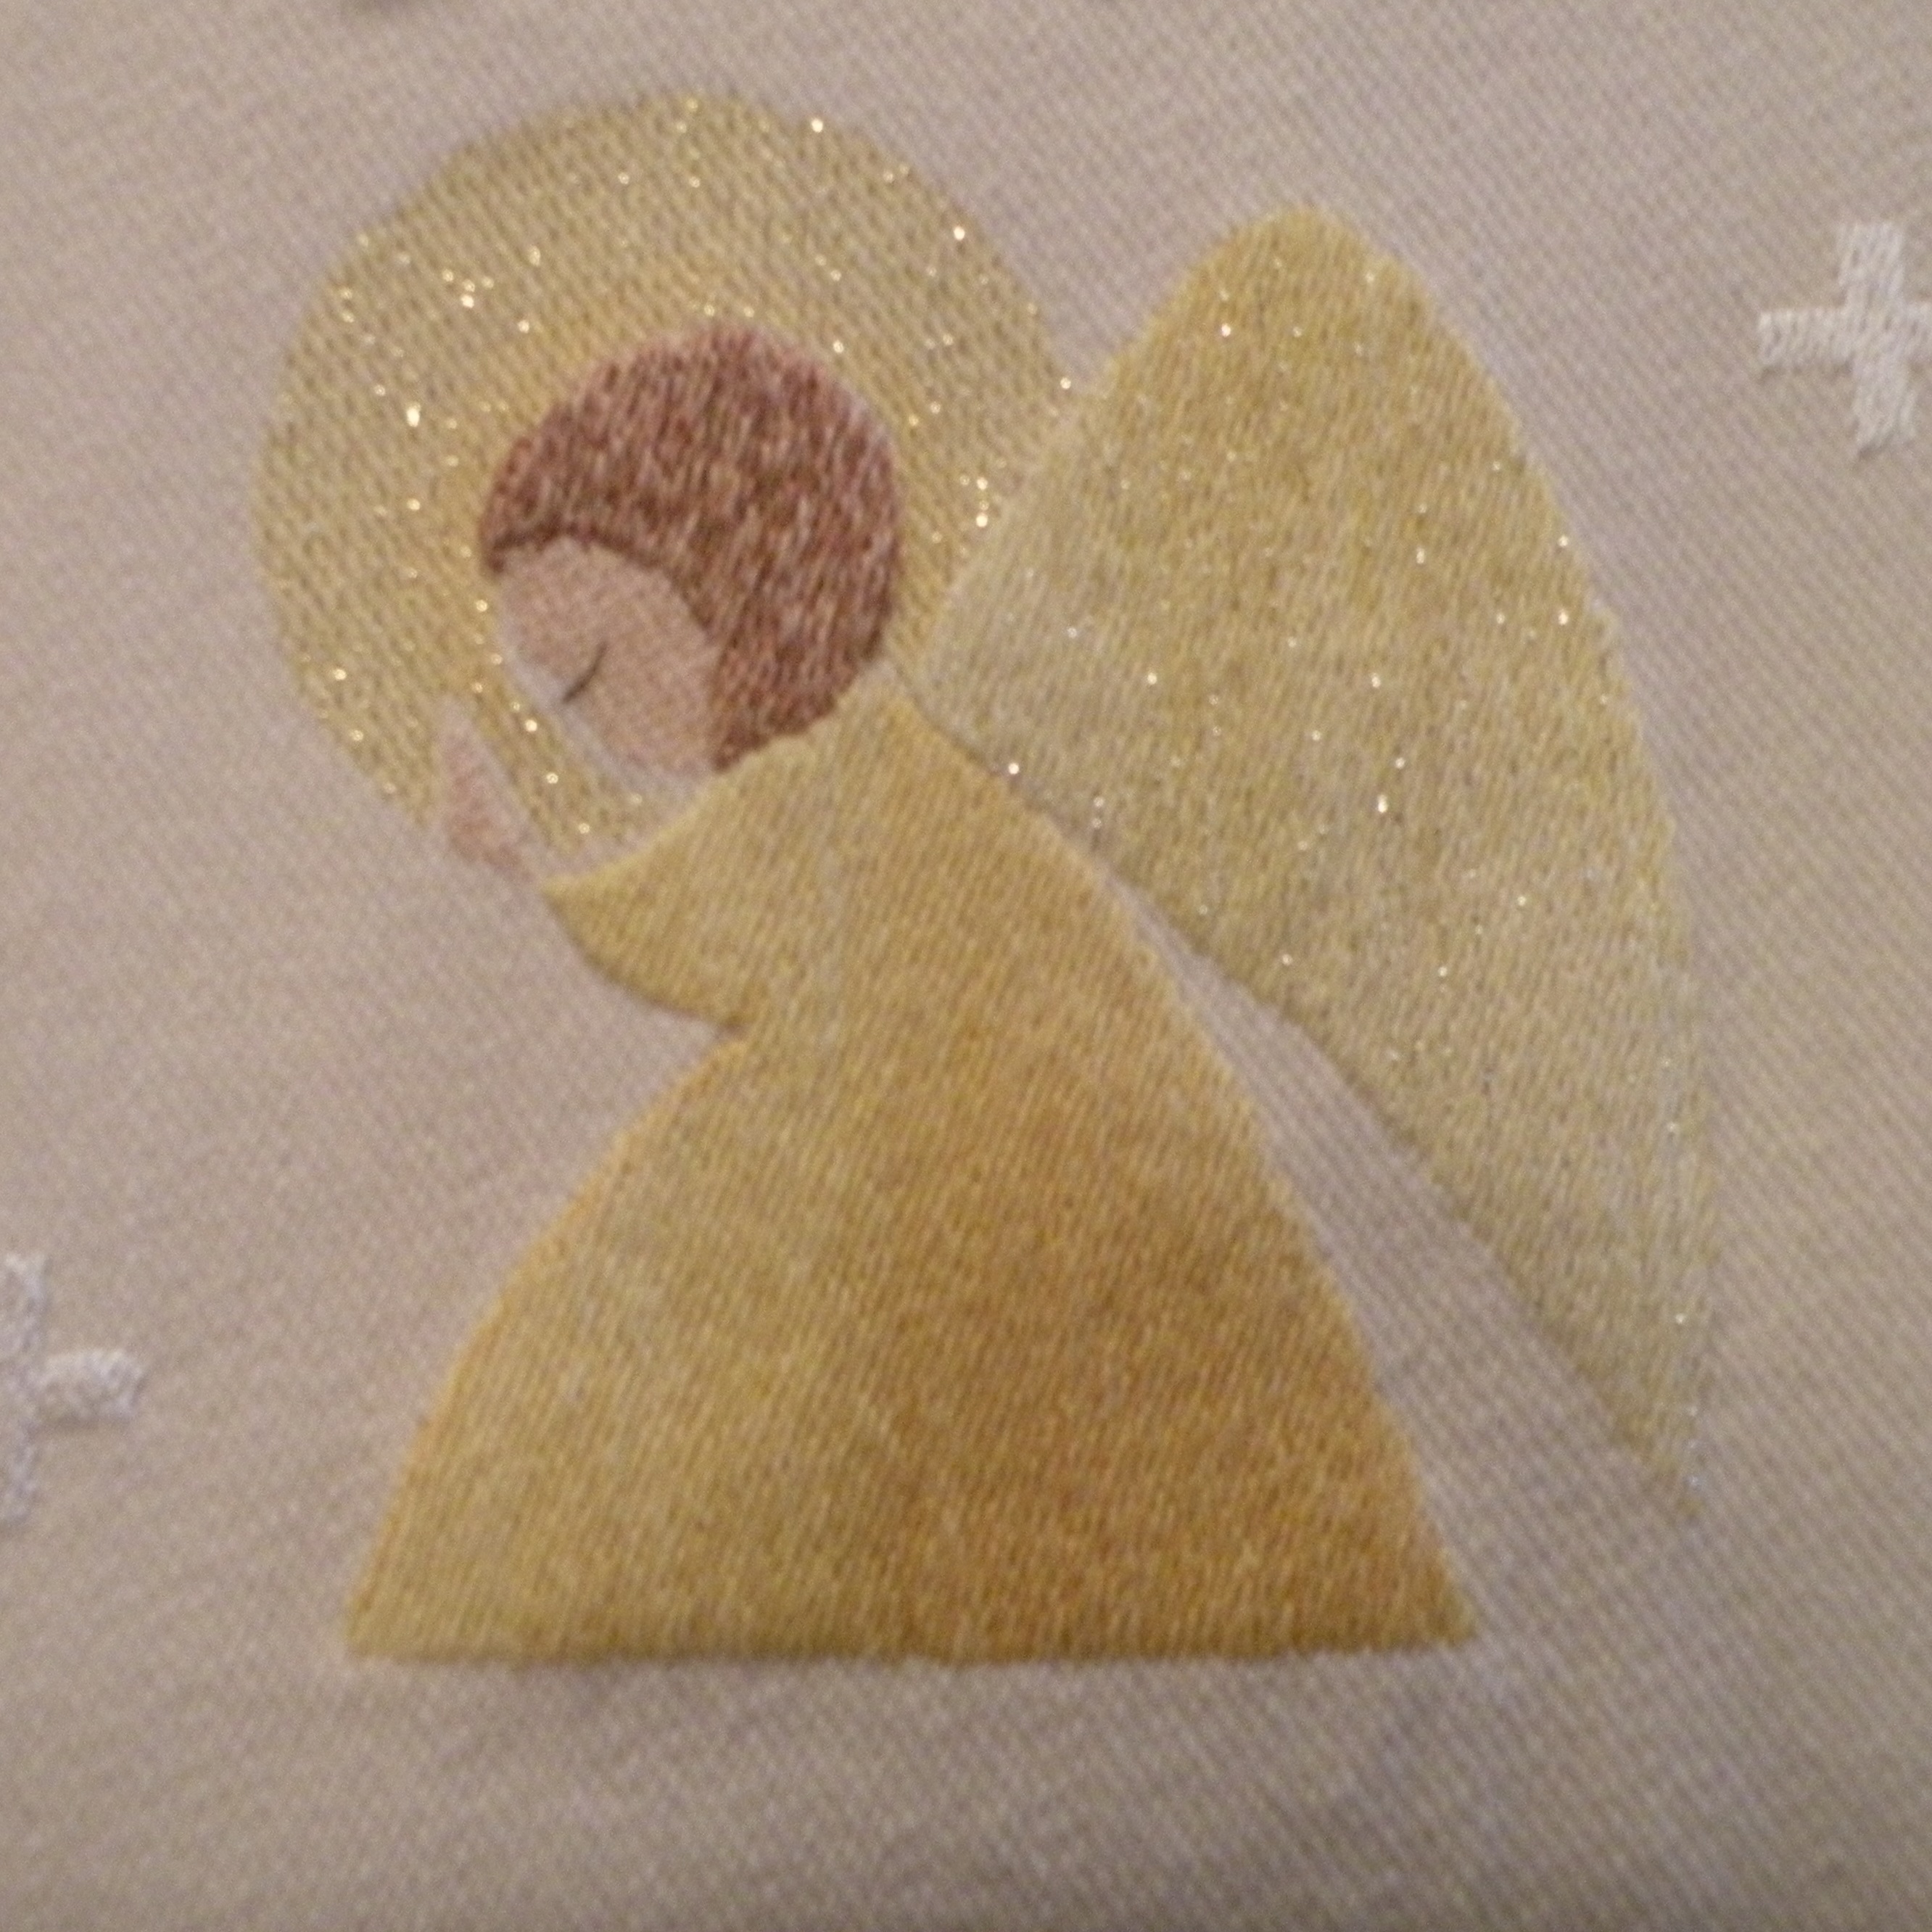 kankaaseen kirjailtu kultapukuinen, kultasiipinen enkeli, joka on kumartunut palvovaan asentoon